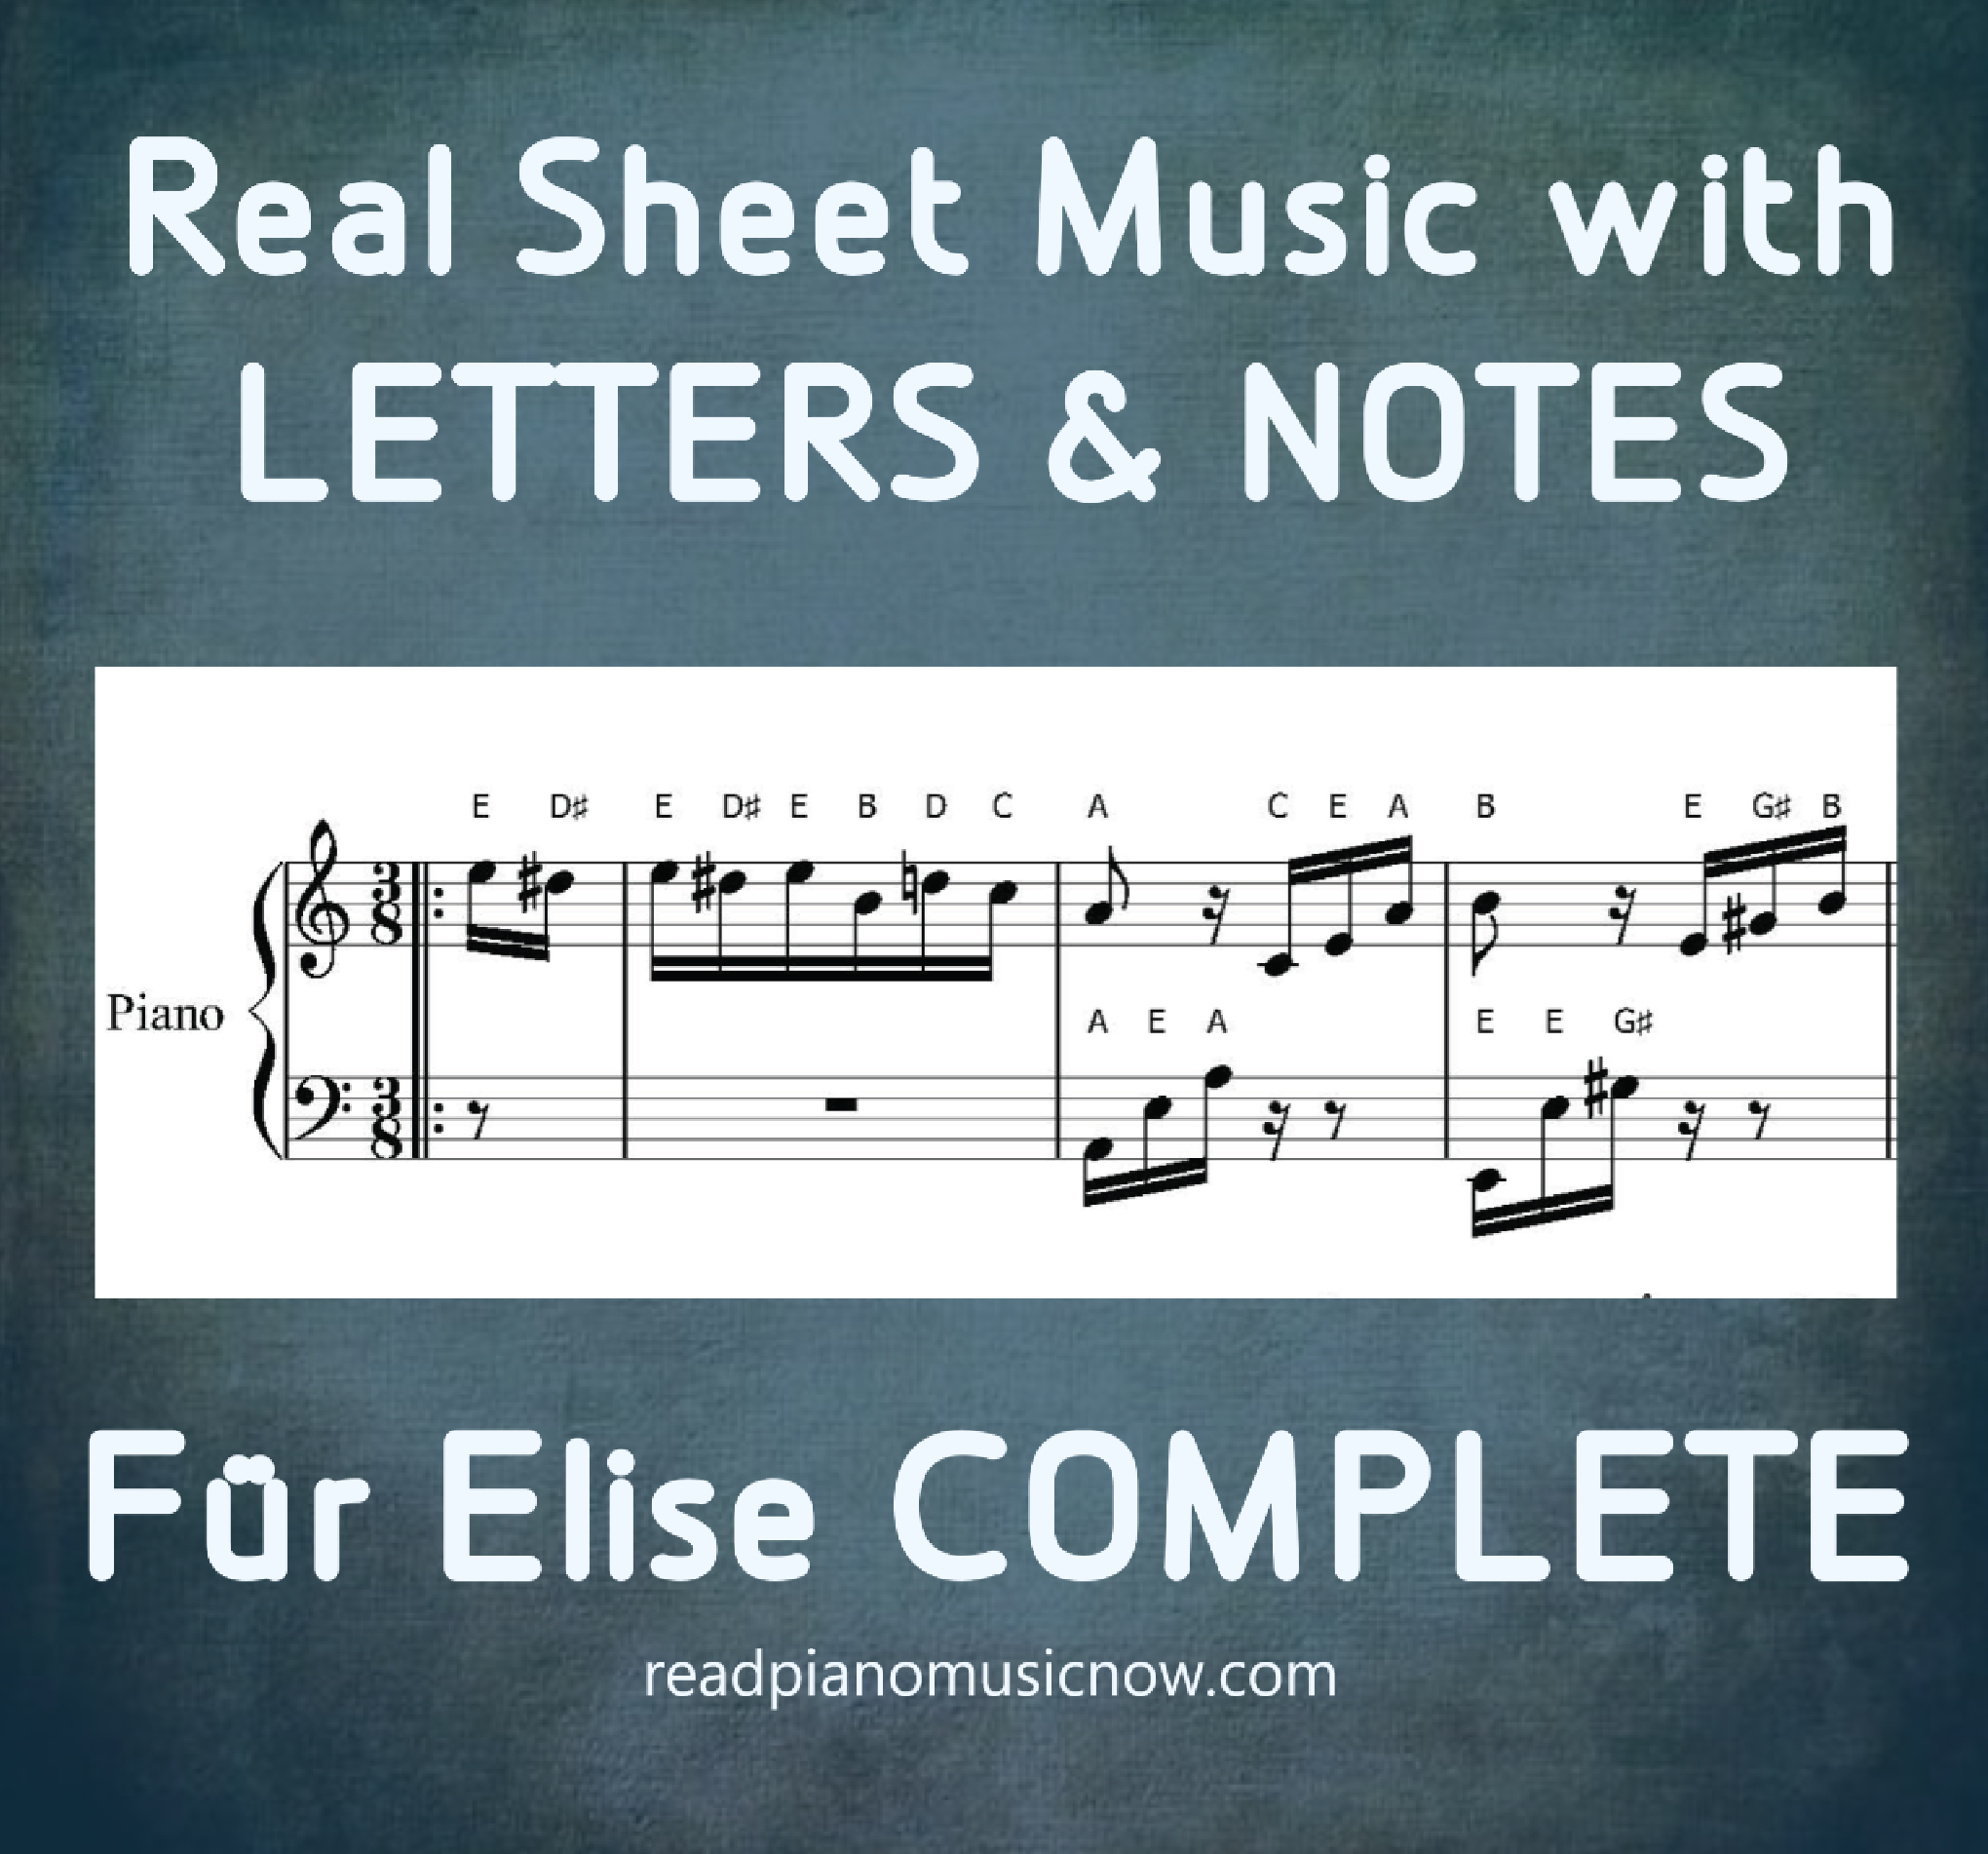 Beethoven'dan Fur Elise - harfli piyano notaları - ürün resmi.